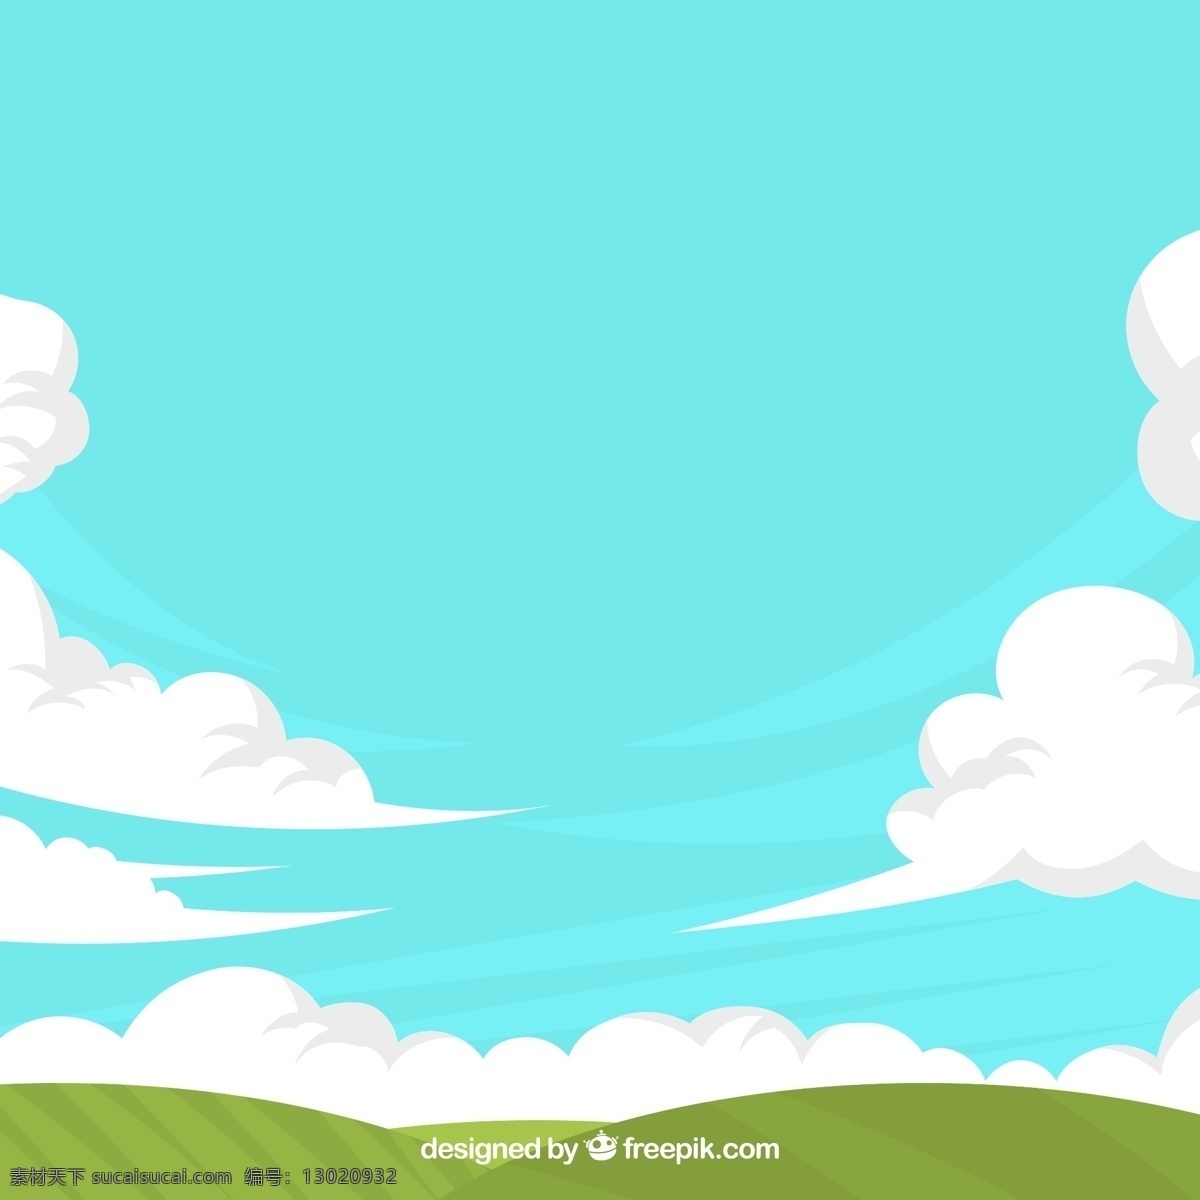 创意 郊外 草地 晴朗 天空 风景 云朵 风 自然 动漫动画 风景漫画